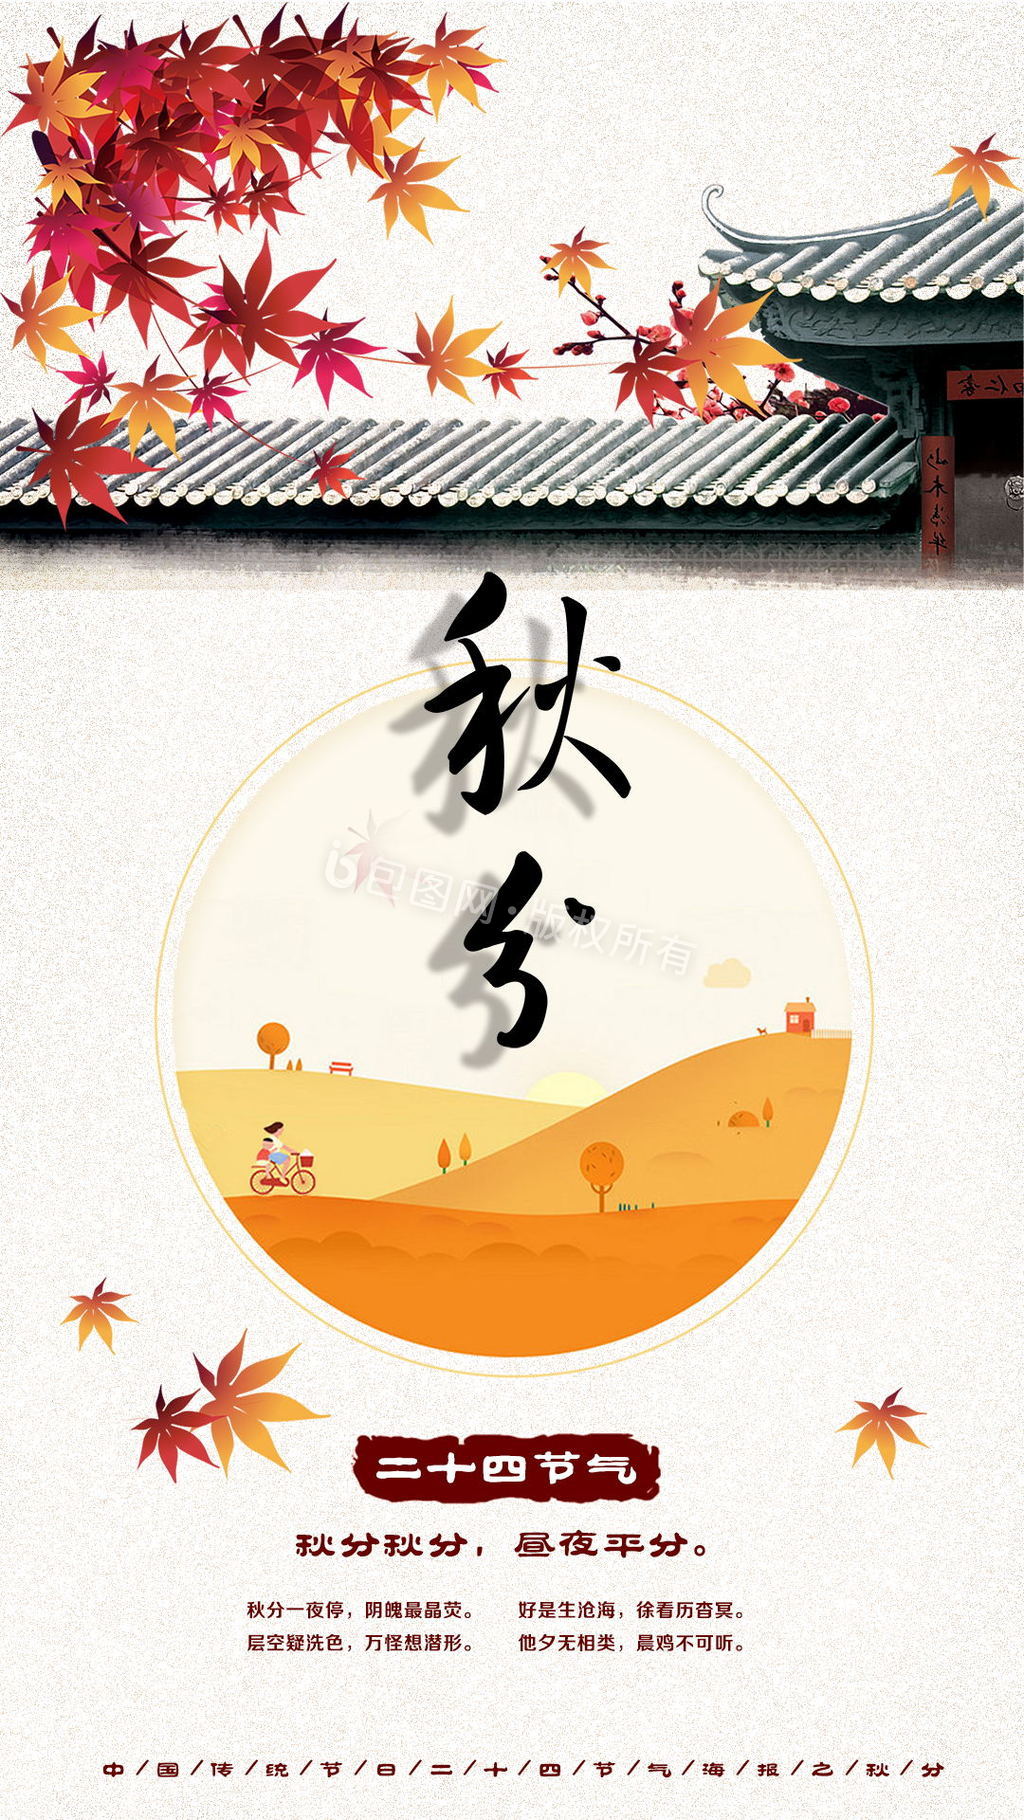 中国二十四节日秋分节日中国风动态海报图片